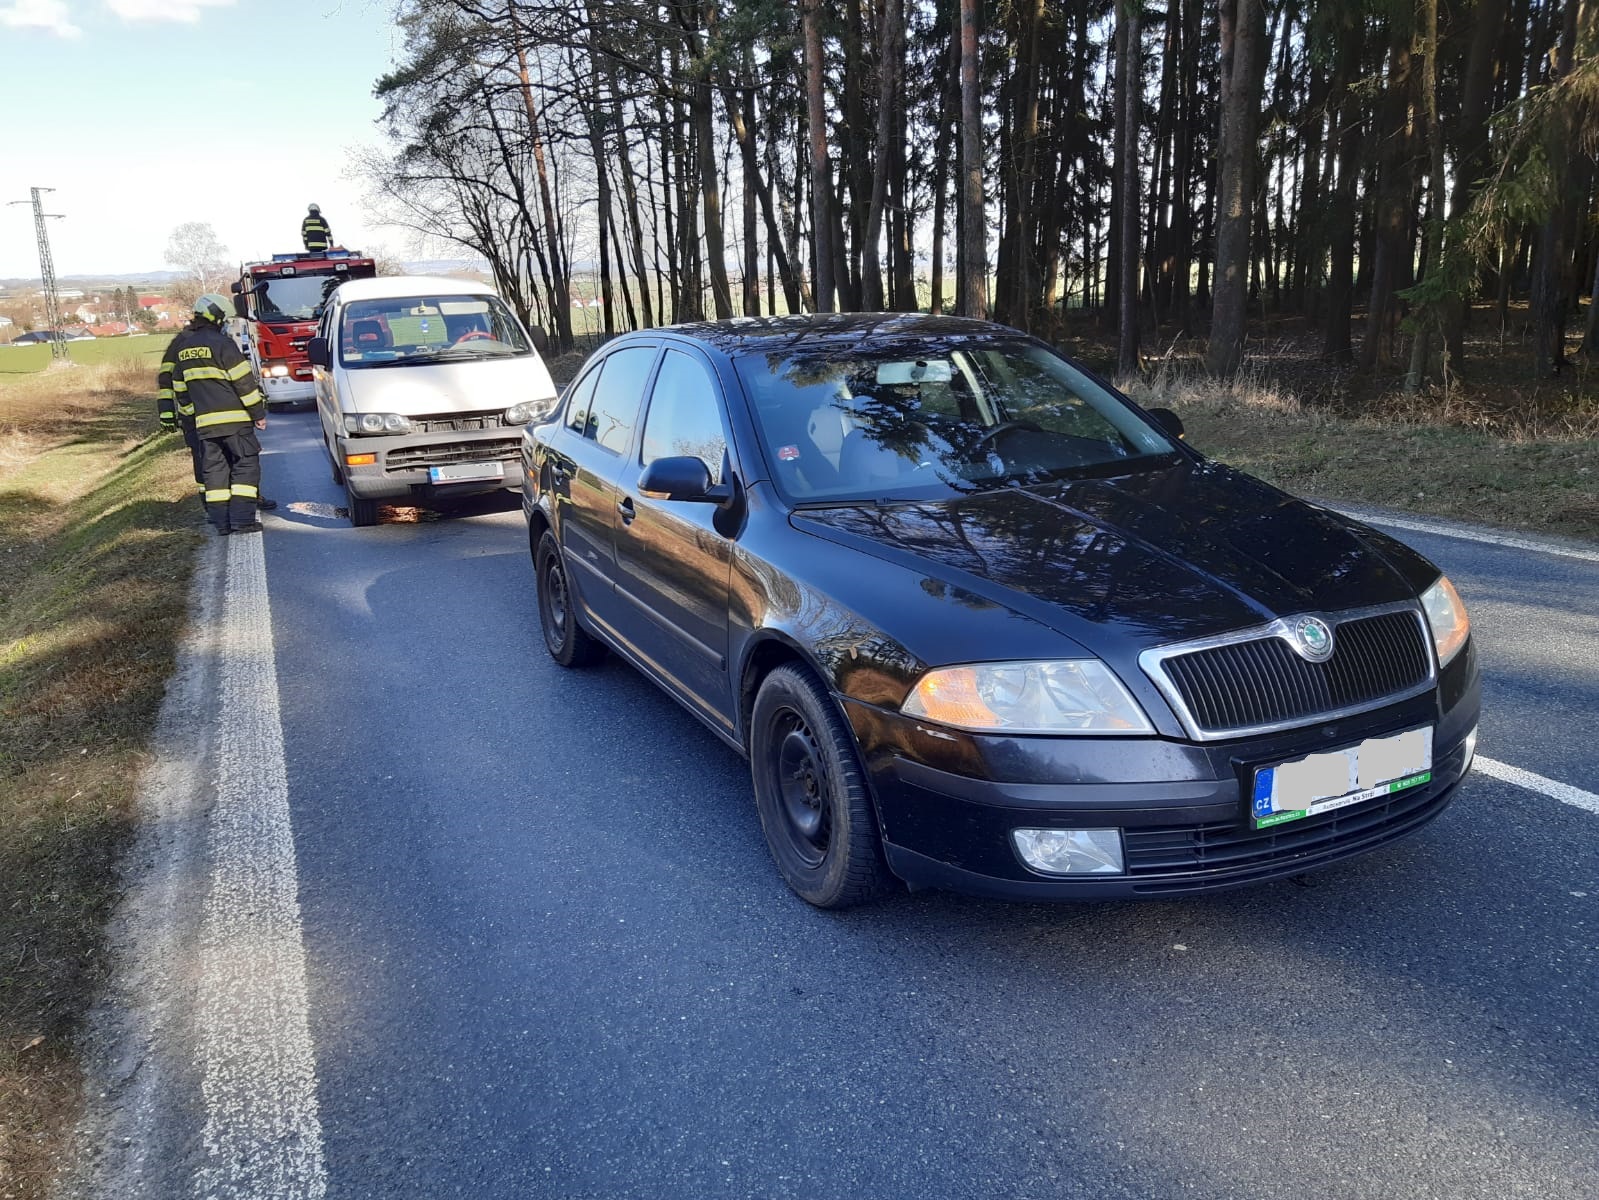 Dopravní nehoda 2 OA, Drhovice - 23. 3. 2020 (1).jpg